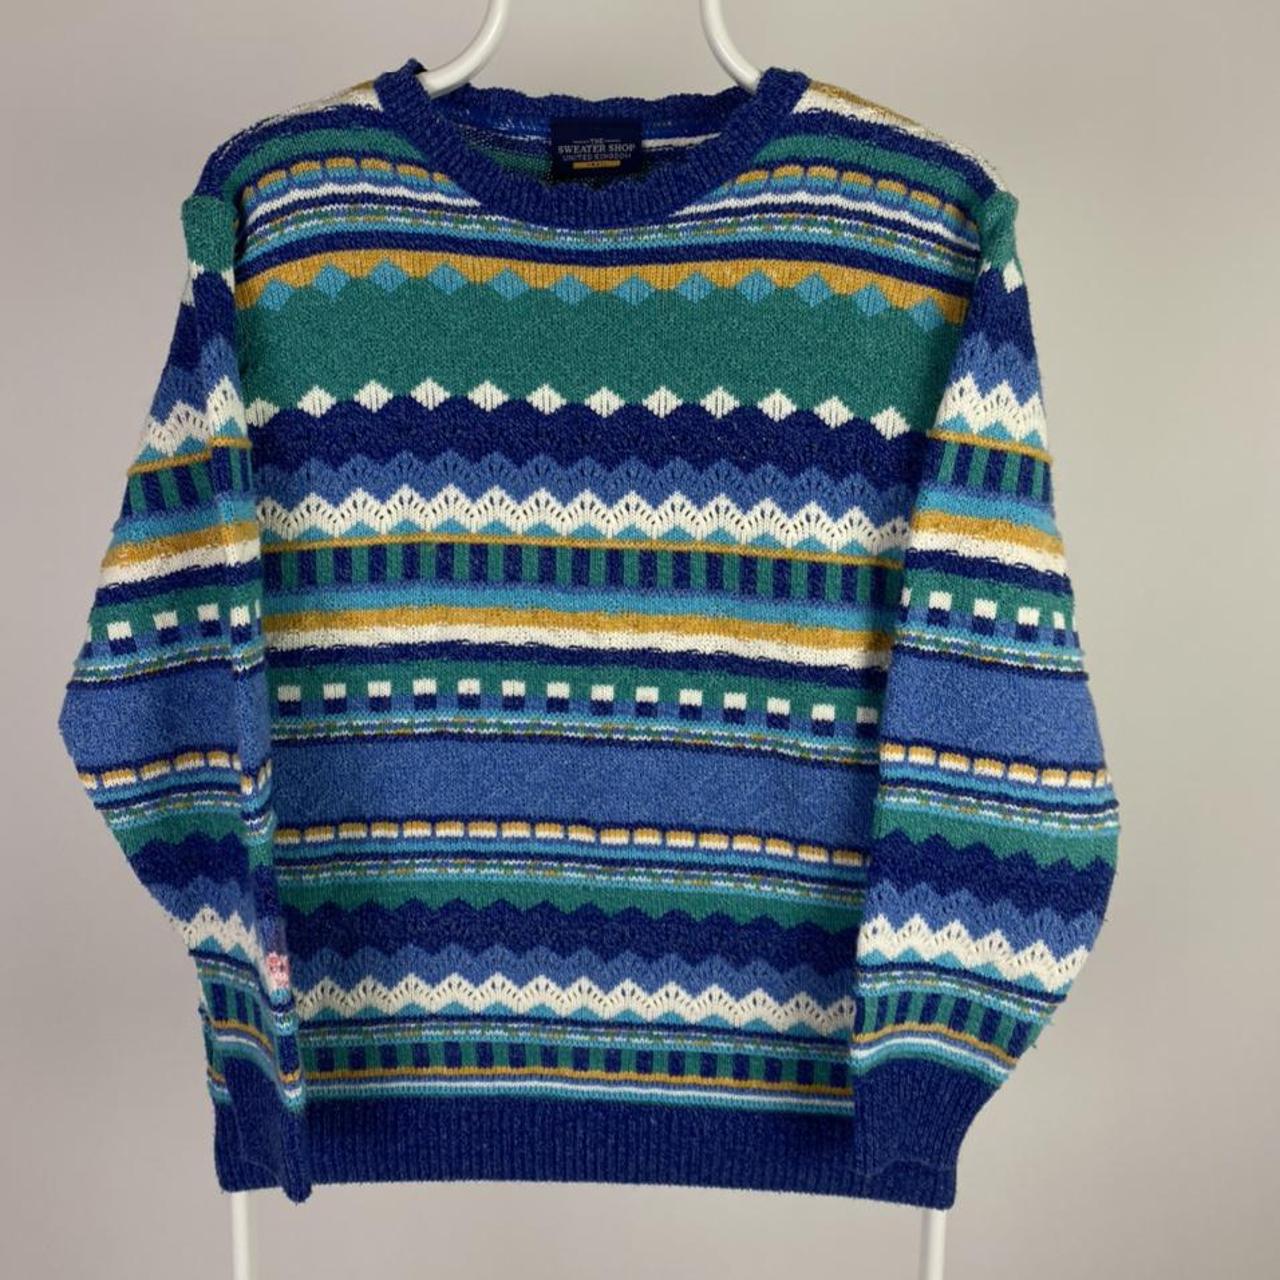 Sweater Shop Women's multi Jumper | Depop